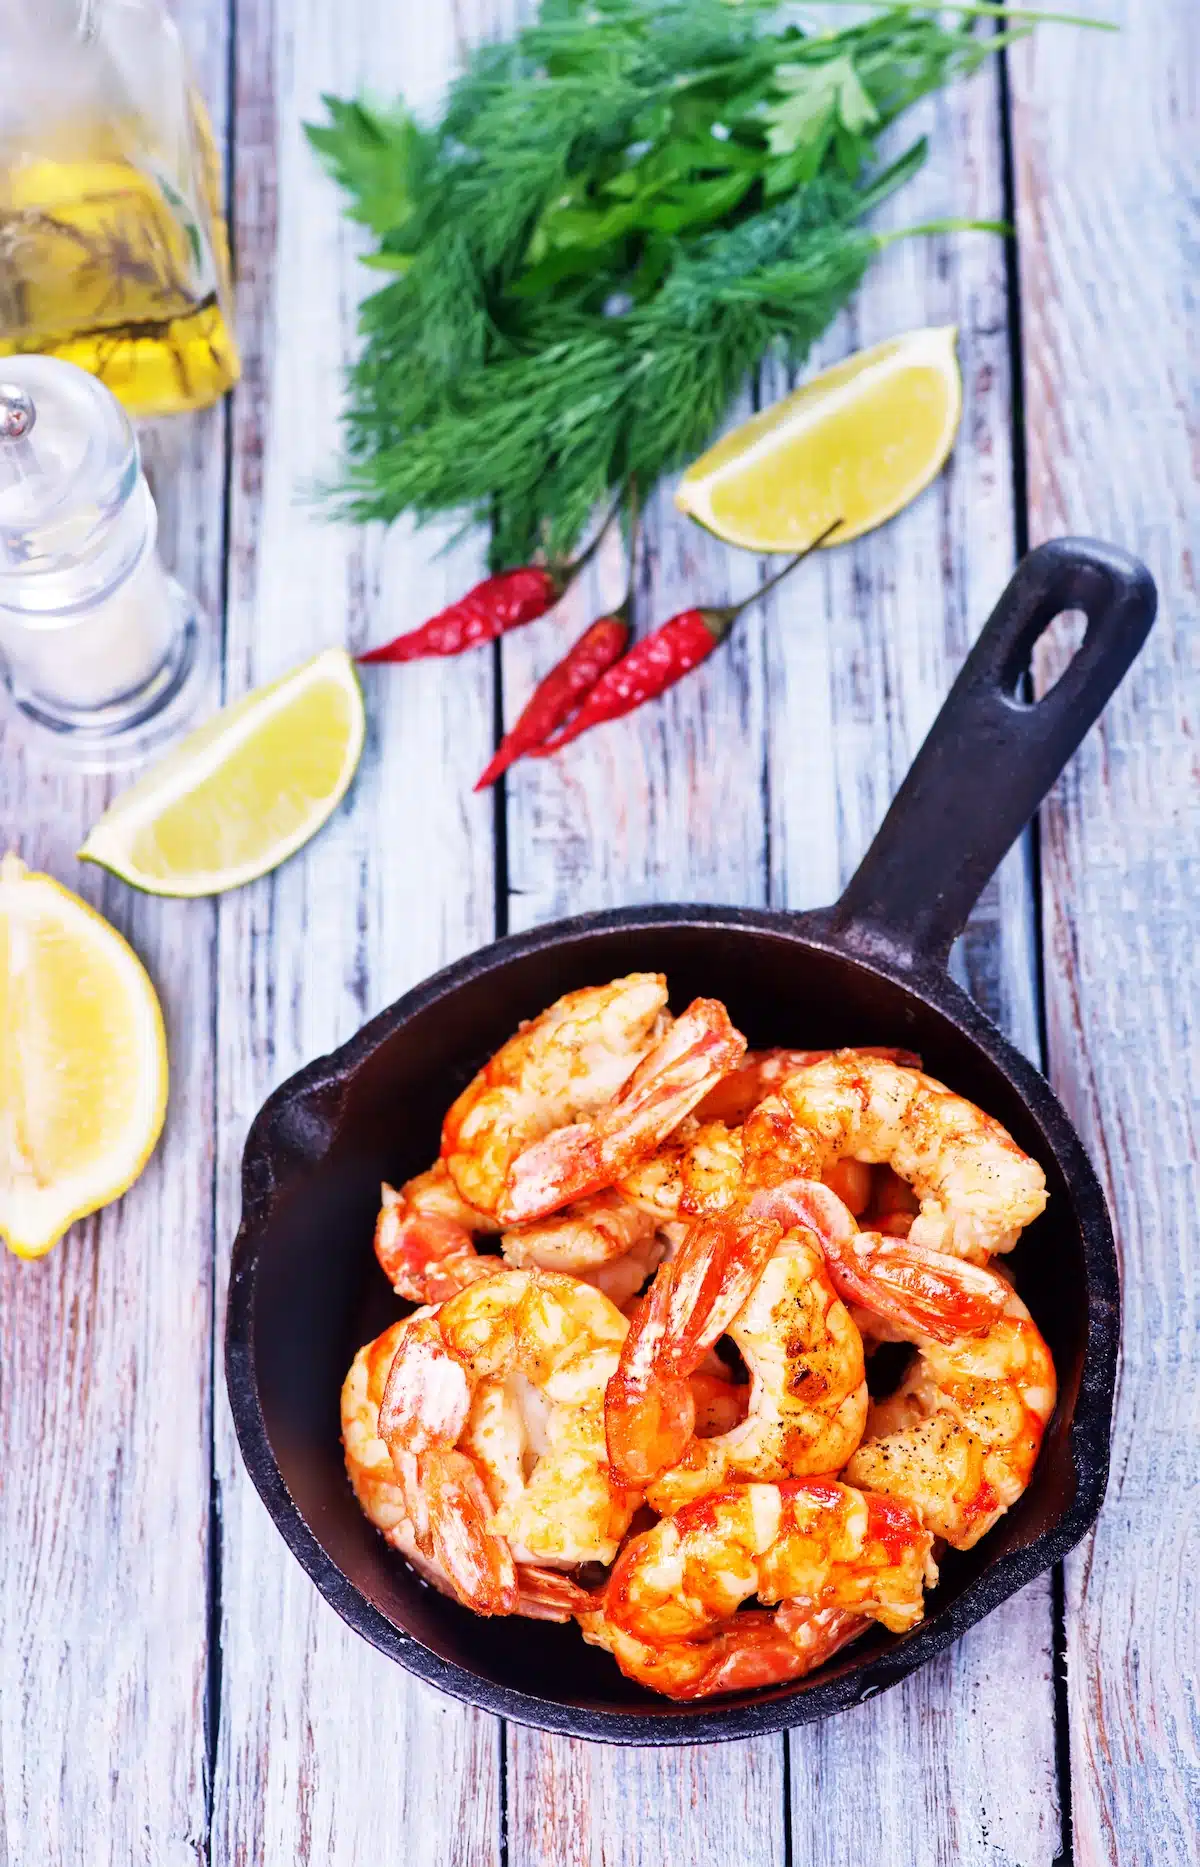 Stir-fried shrimp